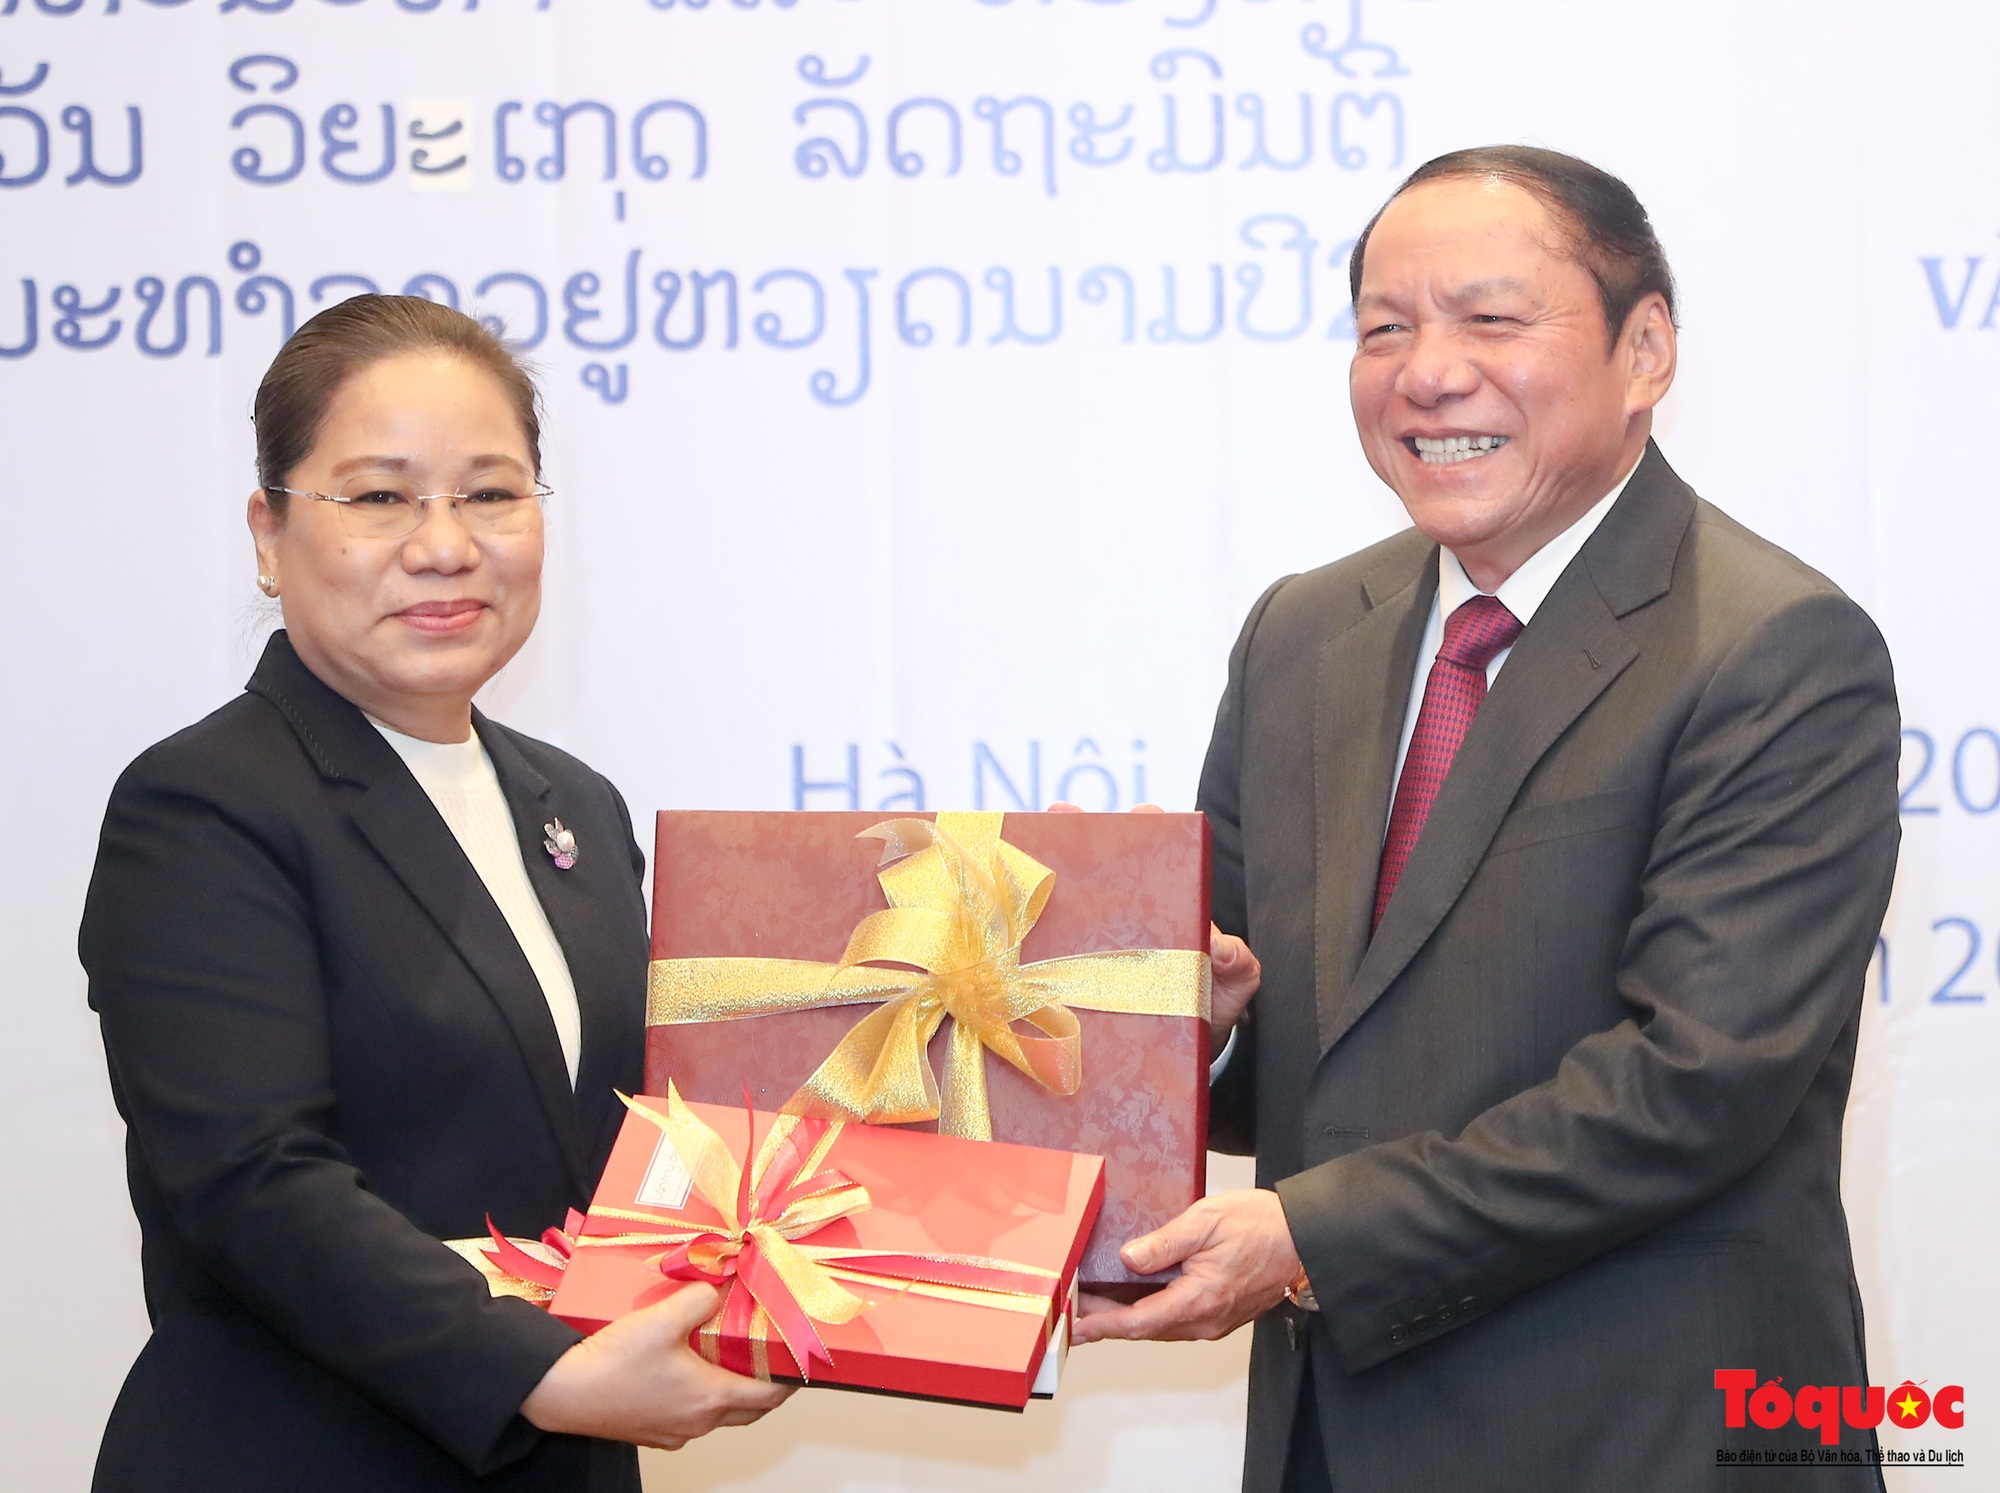 Chùm ảnh: Bộ trưởng Bộ VHTTDL Việt Nam hội đàm với Bộ Thông tin, Văn hóa và Du lịch Lào  - Ảnh 11.